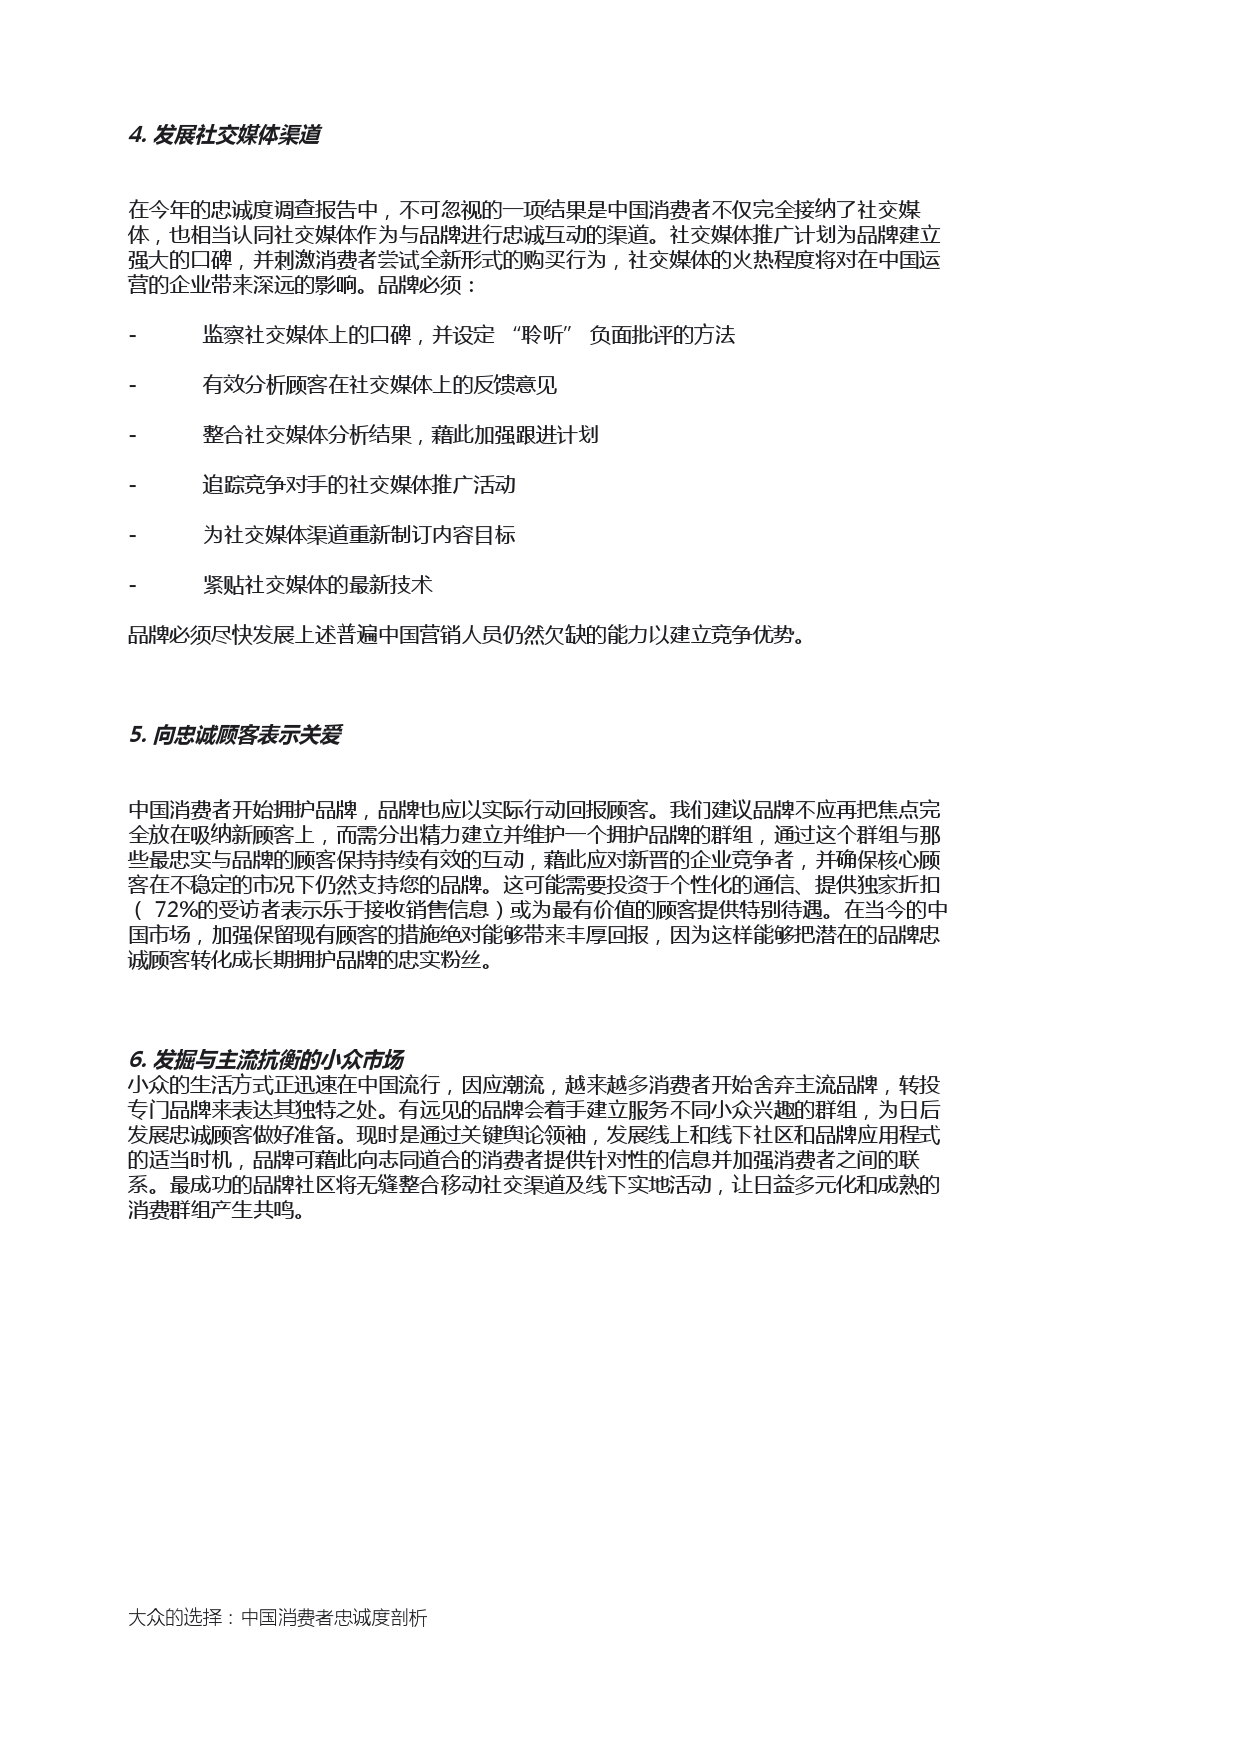 Epsilon_China_Loyalty_Study_report_CN_000019